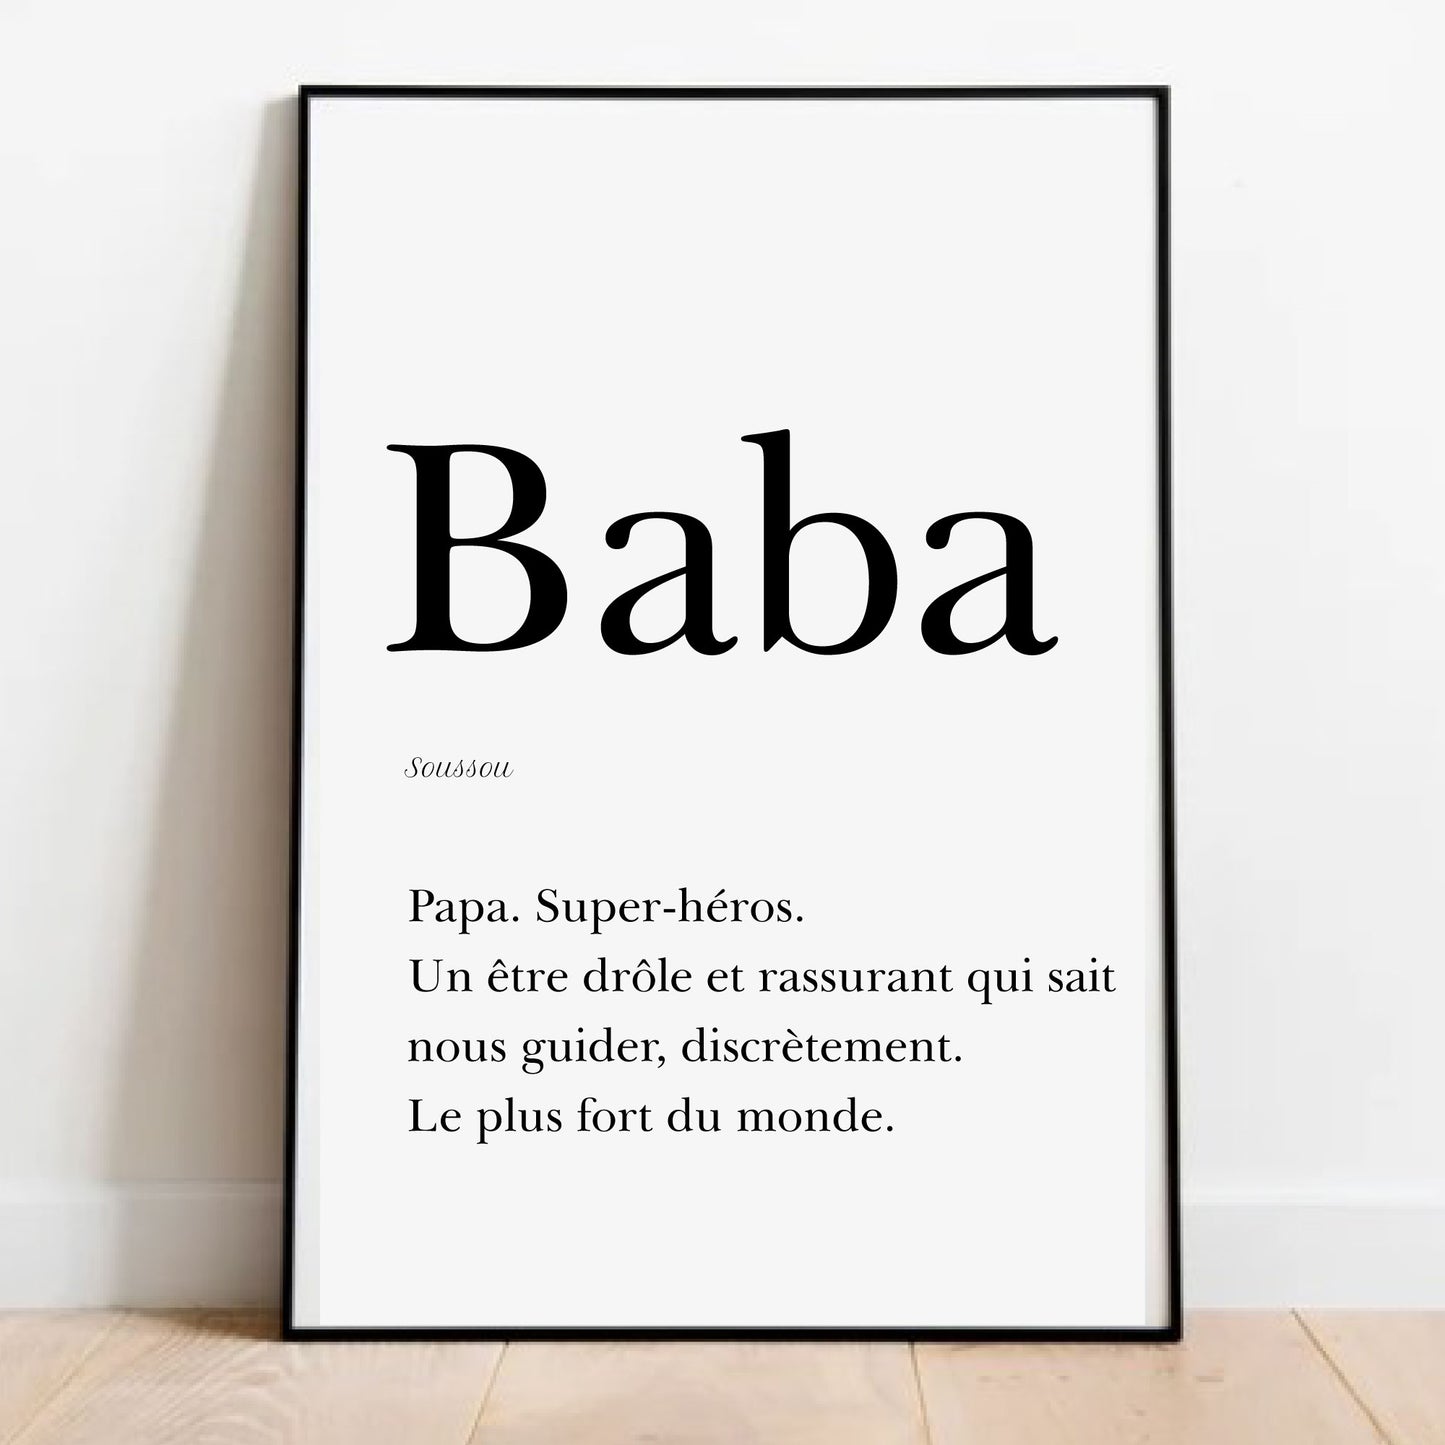 Dad in Susu - "Baba" poster